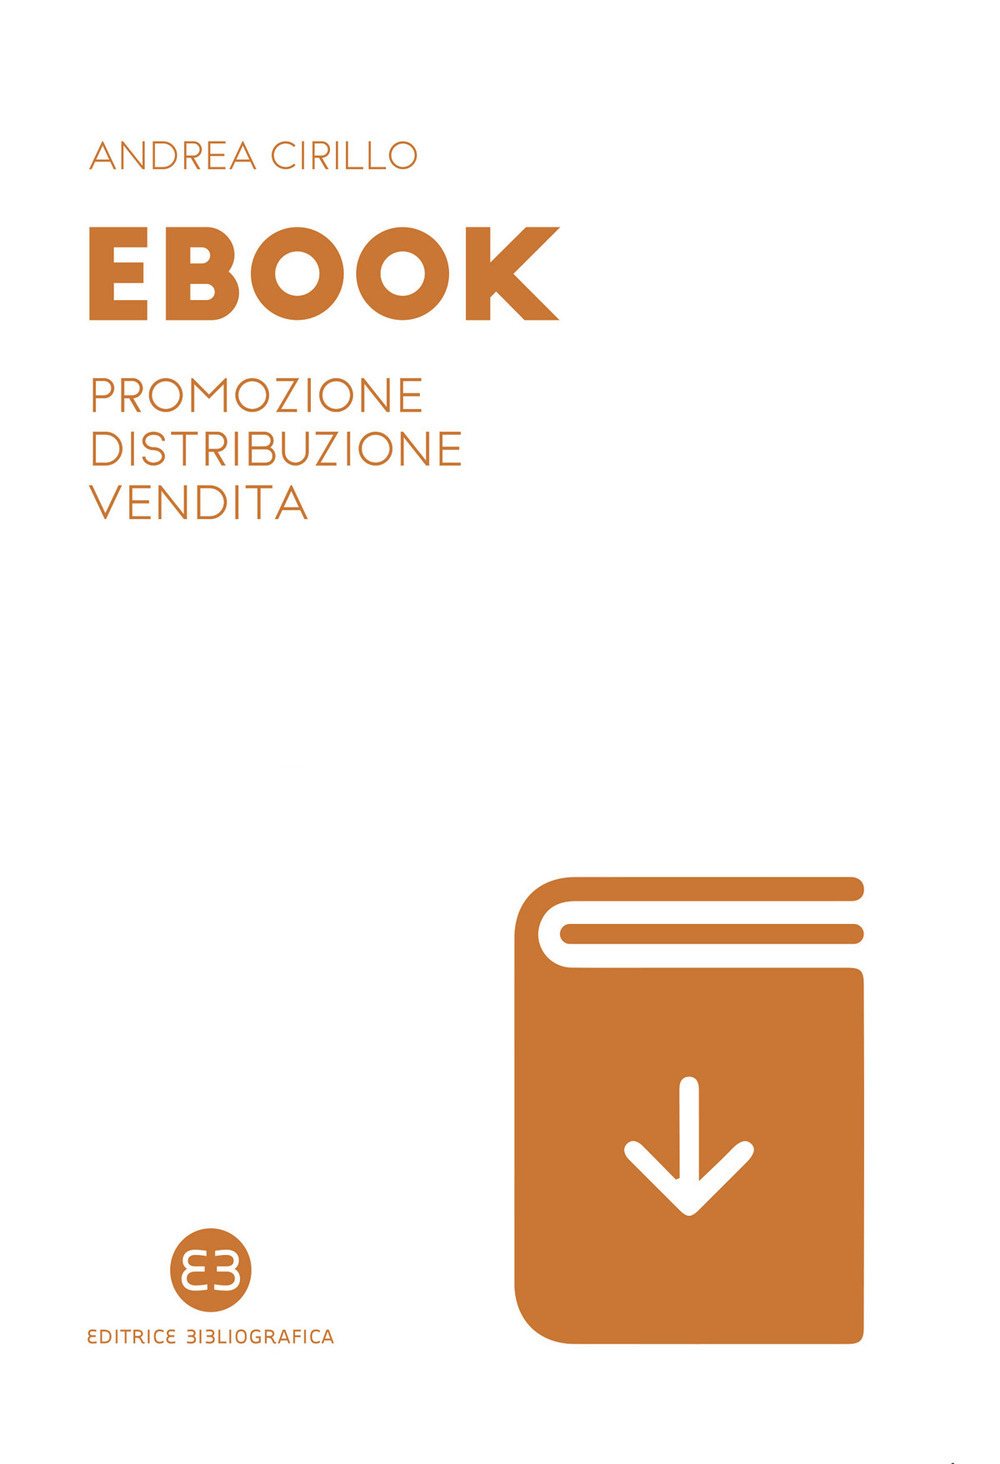 Libri Andrea Cirillo - Ebook. Promozione, Distribuzione, Vendita NUOVO SIGILLATO, EDIZIONE DEL 11/06/2020 SUBITO DISPONIBILE